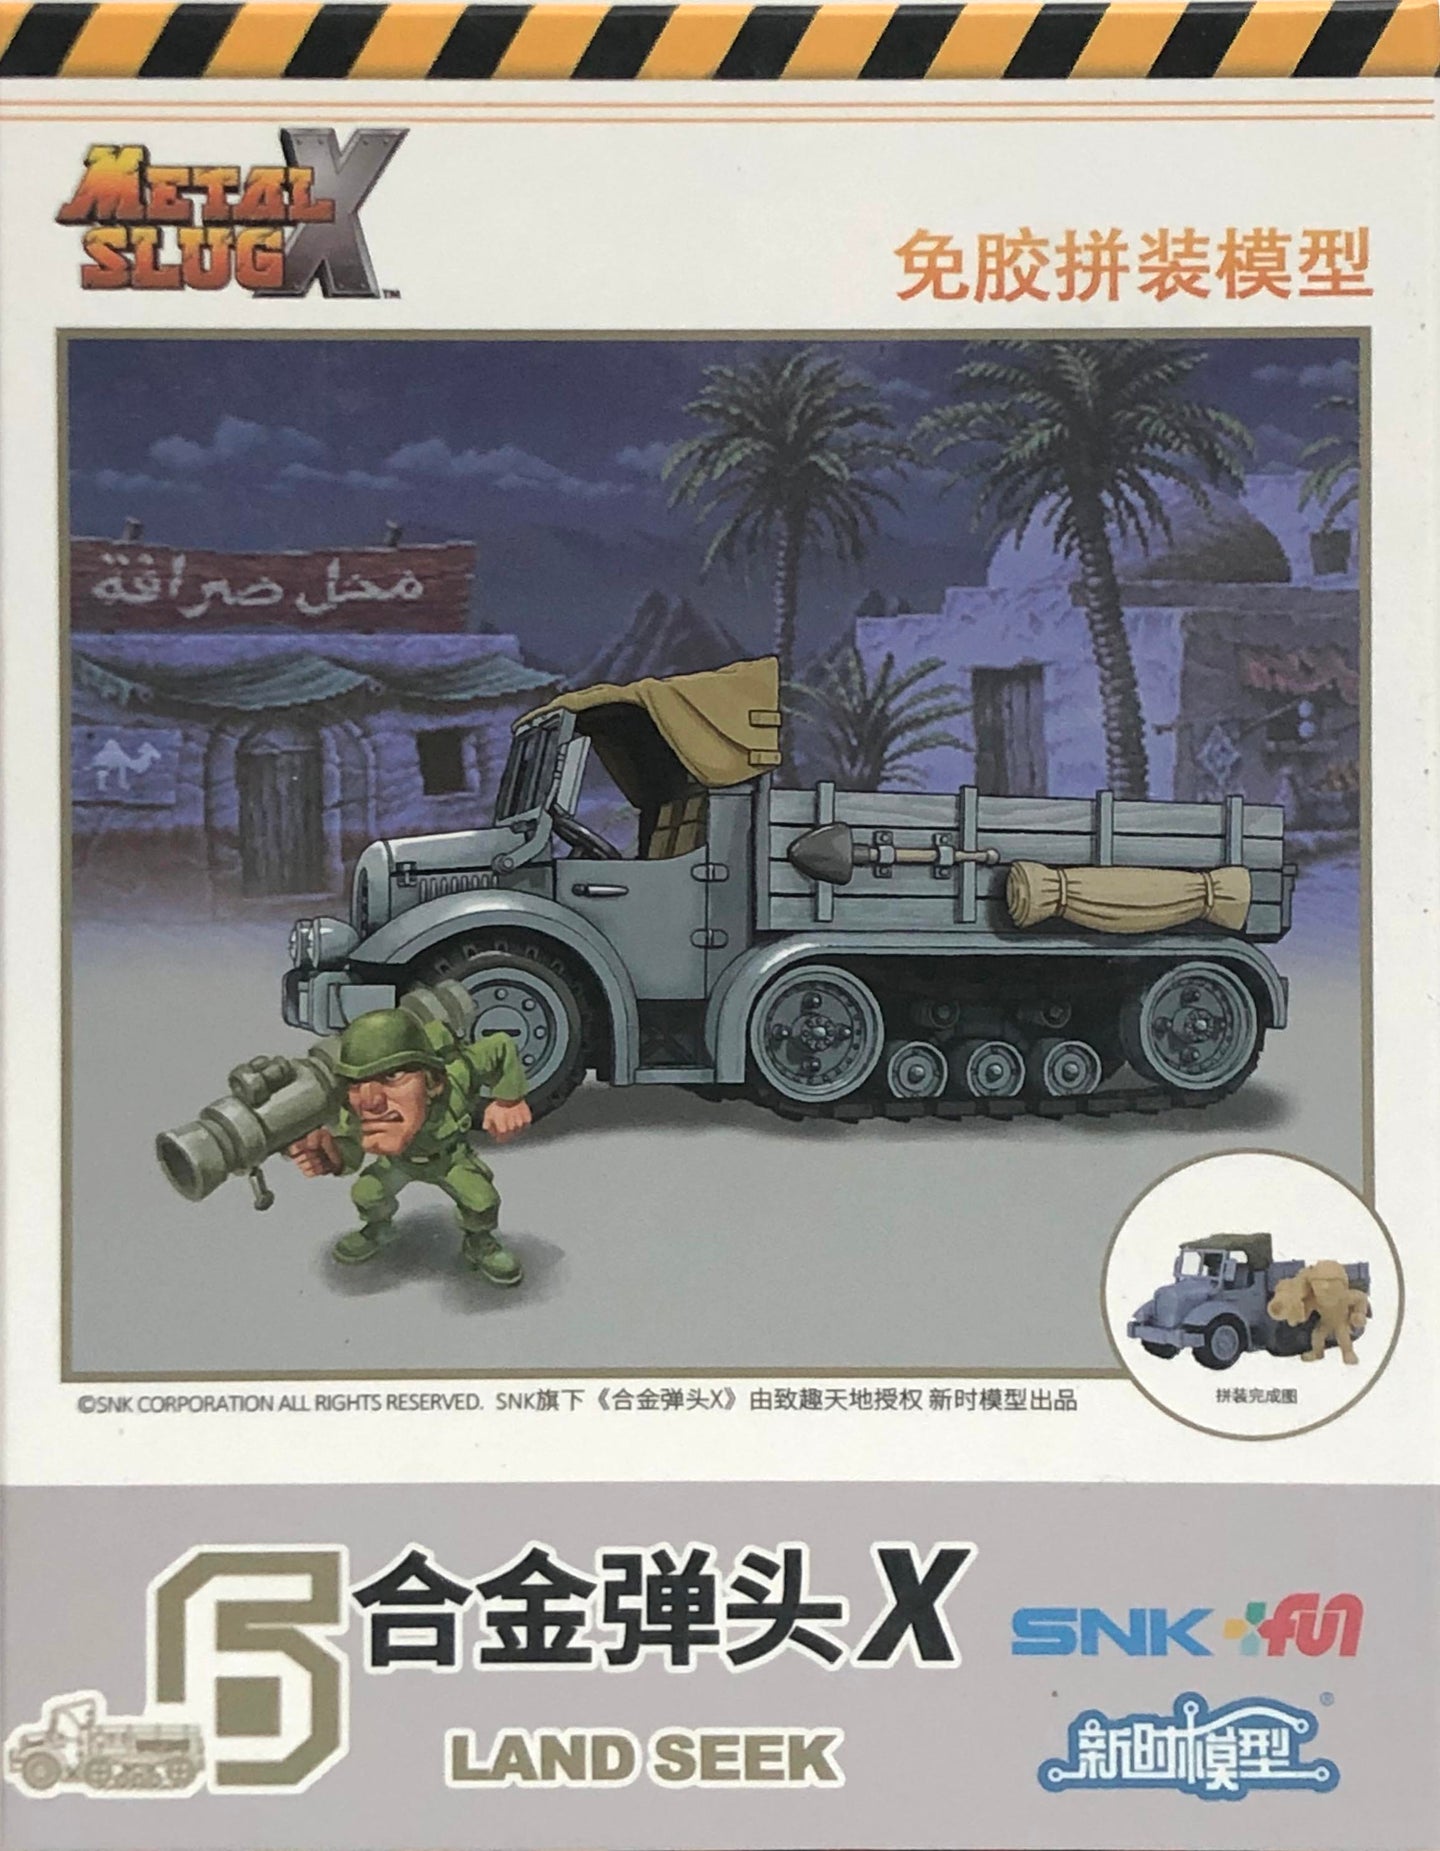 Funverse Metal Slug X #6 Land Seek Kit MSX006